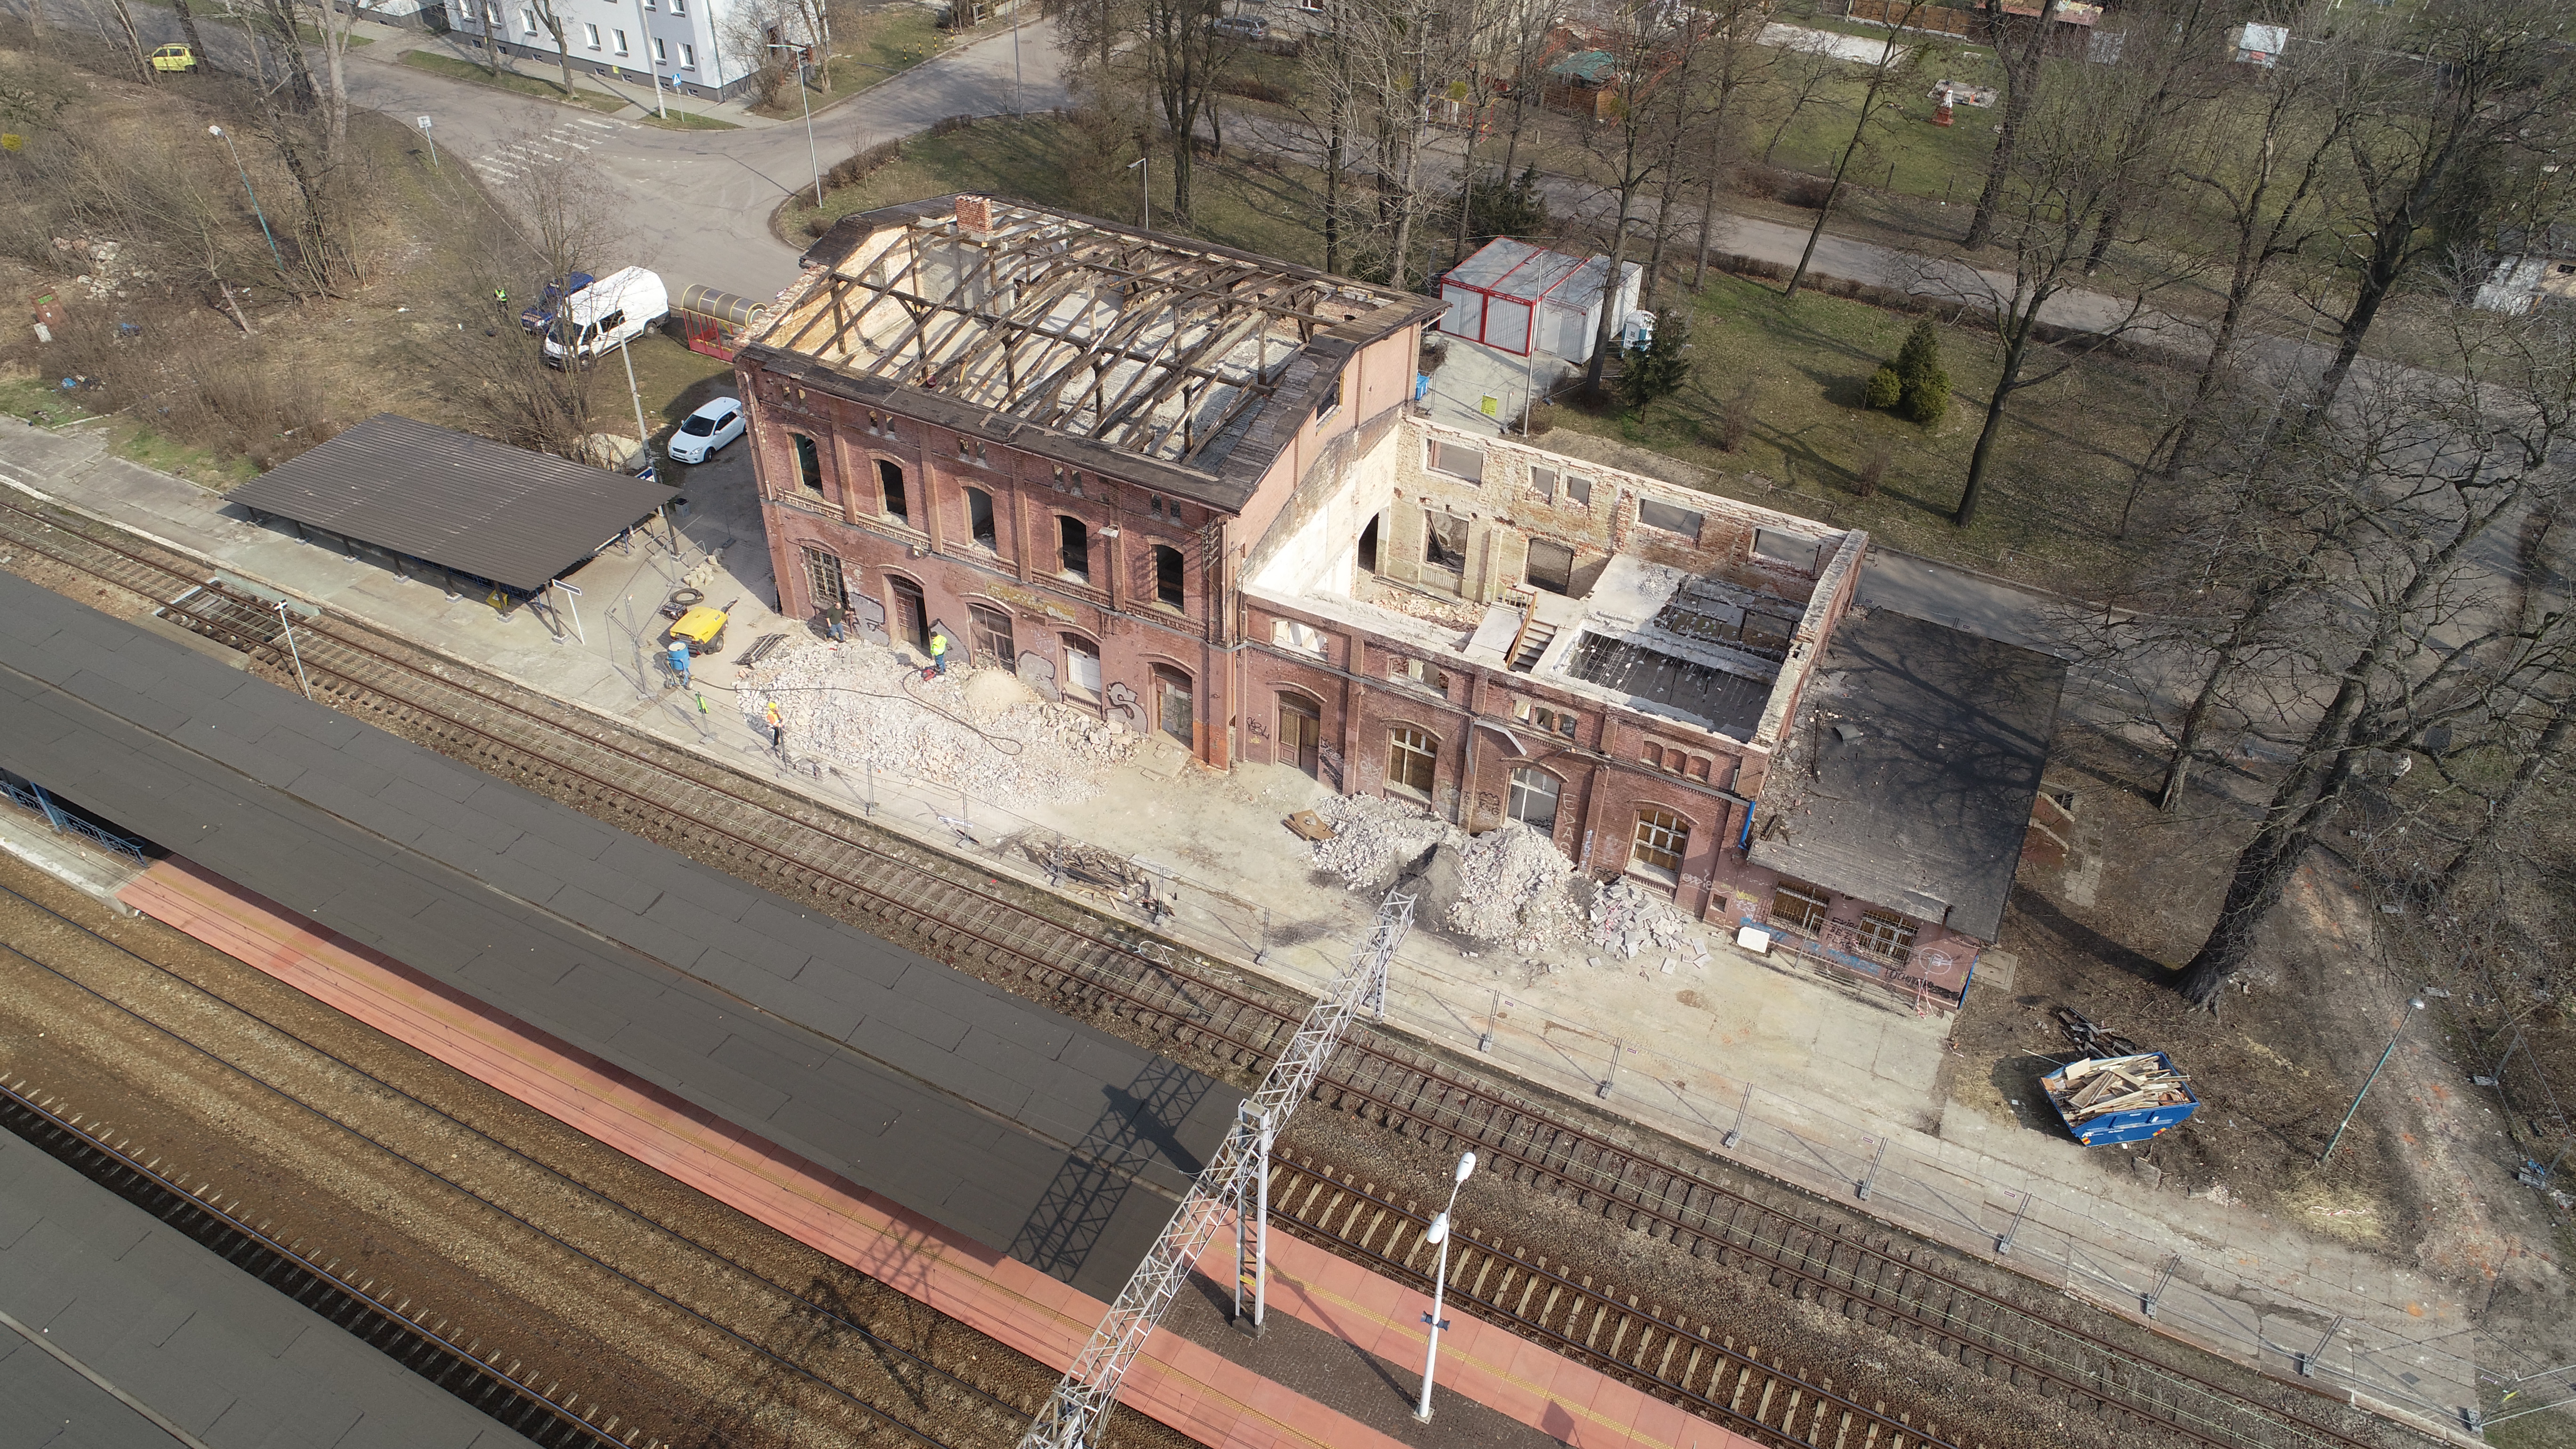 Dawny dworzec kolejowy z lotu ptaka w trakcie prac remontowo - rozbiórkowych. Obiekt nie posiada poszycia dachowego.